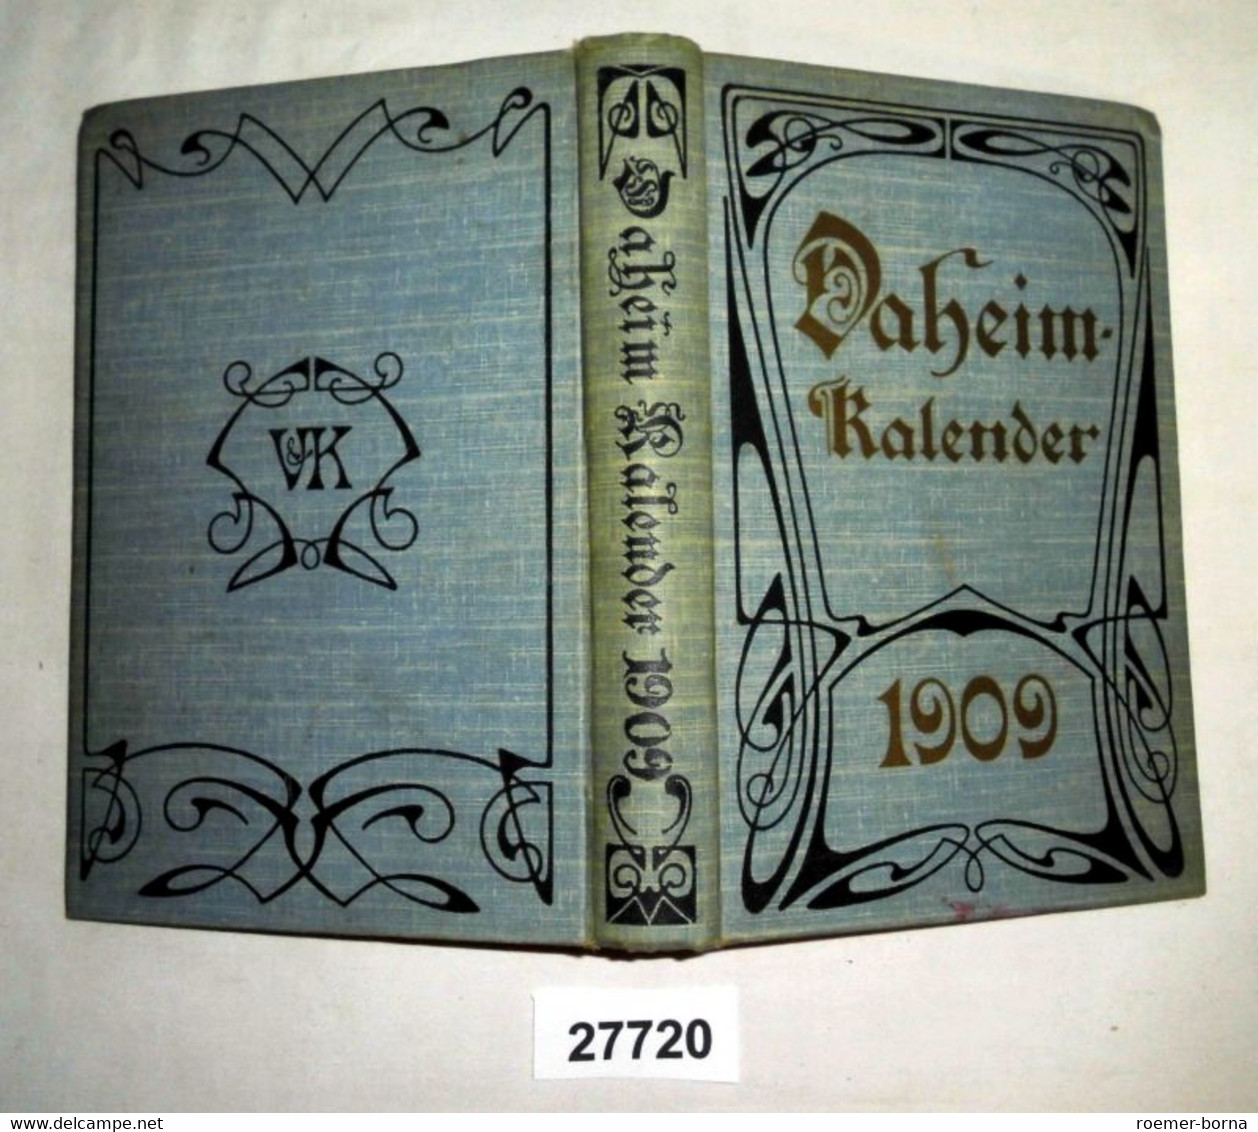 Daheim-Kalender 1909 - Calendars